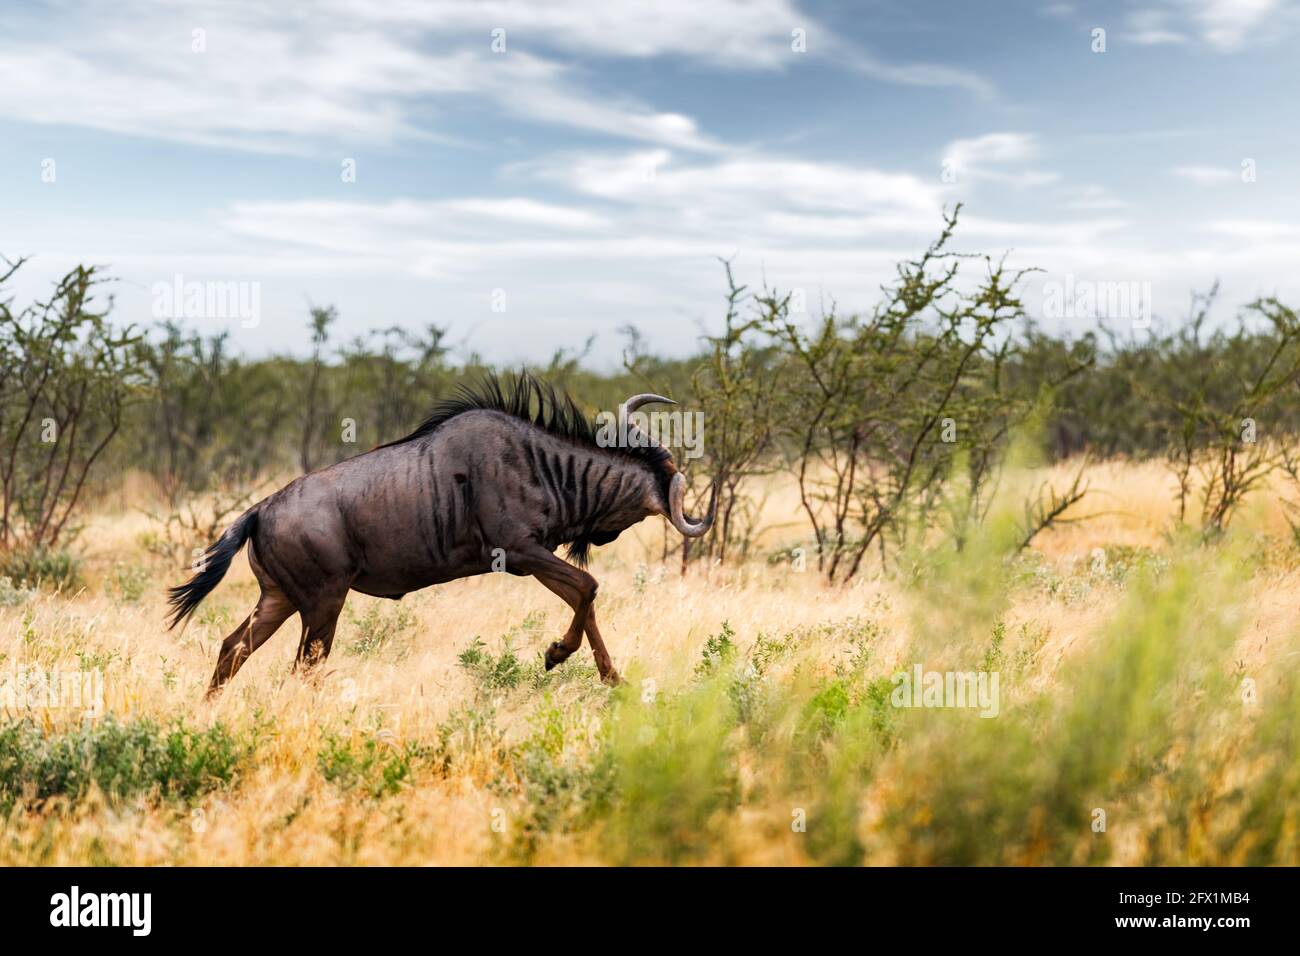 Gran antílope africano GNU (ñus azul, connochaetes taurinus) que corre en hierba seca amarilla por la noche en sabana namibiana. Fotografía de vida silvestre en África Foto de stock